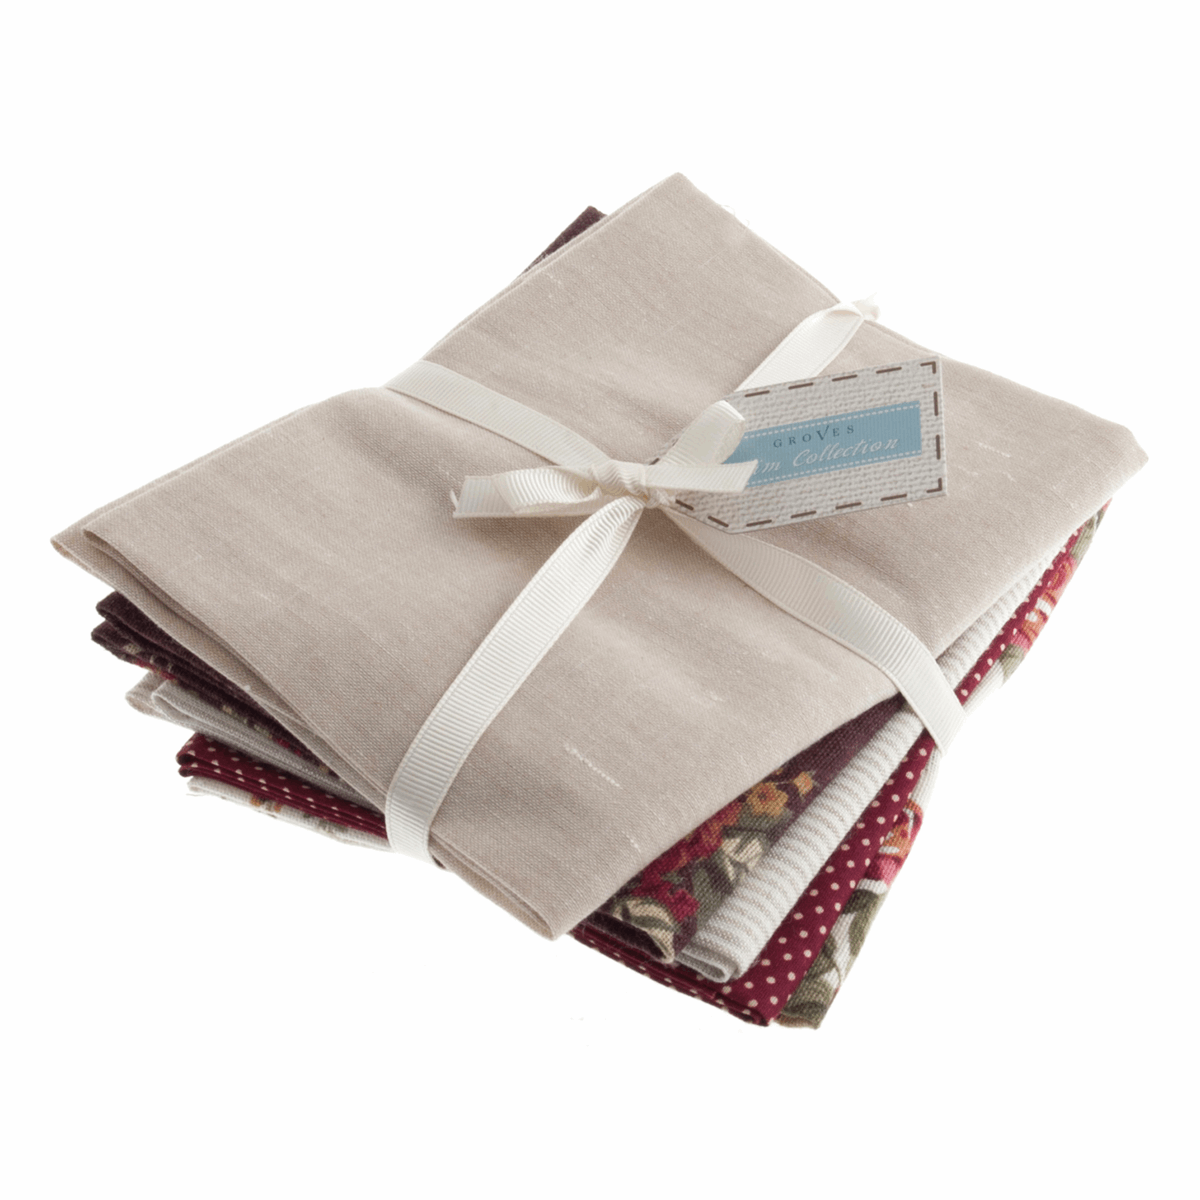 Quilting Fabric - Fat Quarter Bundle - Linen Look Cotton Blend Natural Bundle by Trimits